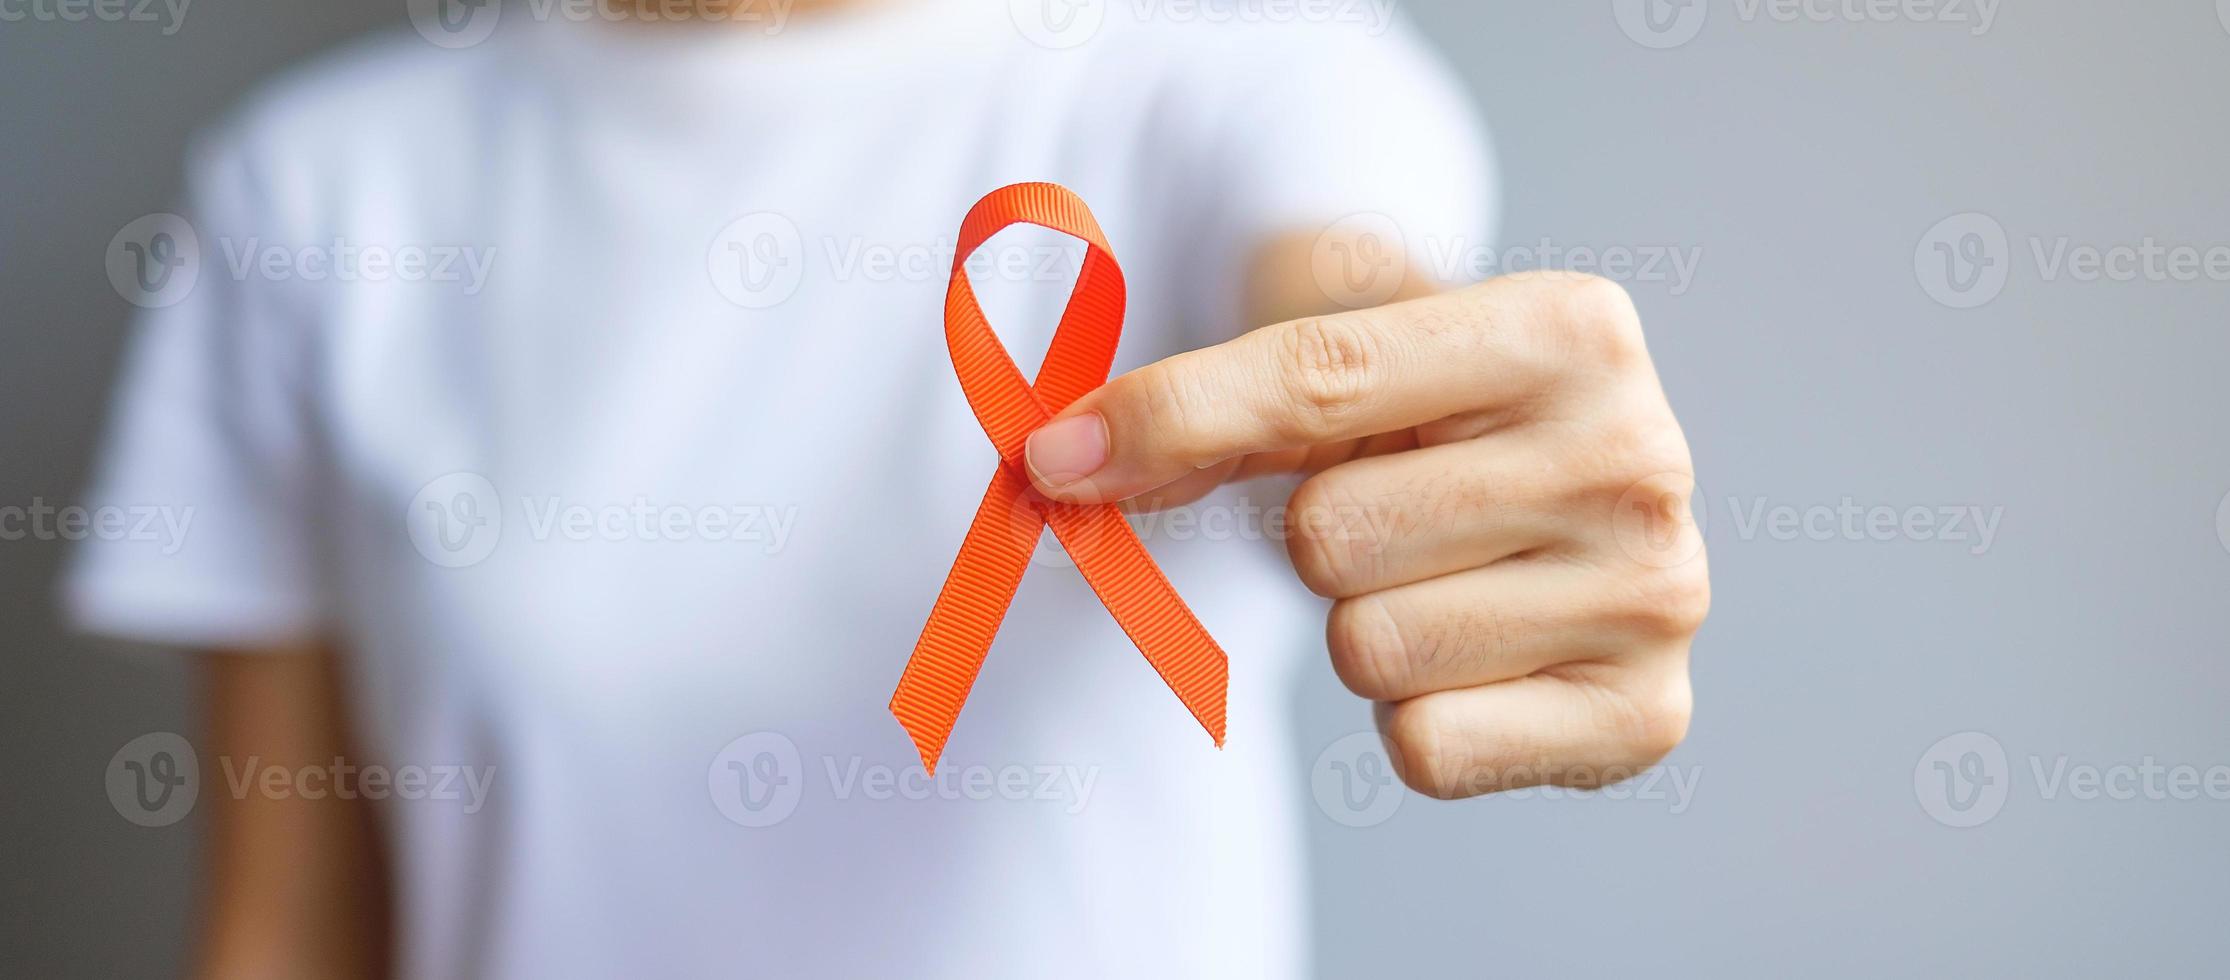 Hand mit orangefarbenem Band für Leukämie, Tag des Nierenkrebses, weltweite Multiple Sklerose, crps, Monat des Bewusstseins für Selbstverletzungen. gesundheits- und wortkrebstageskonzept foto